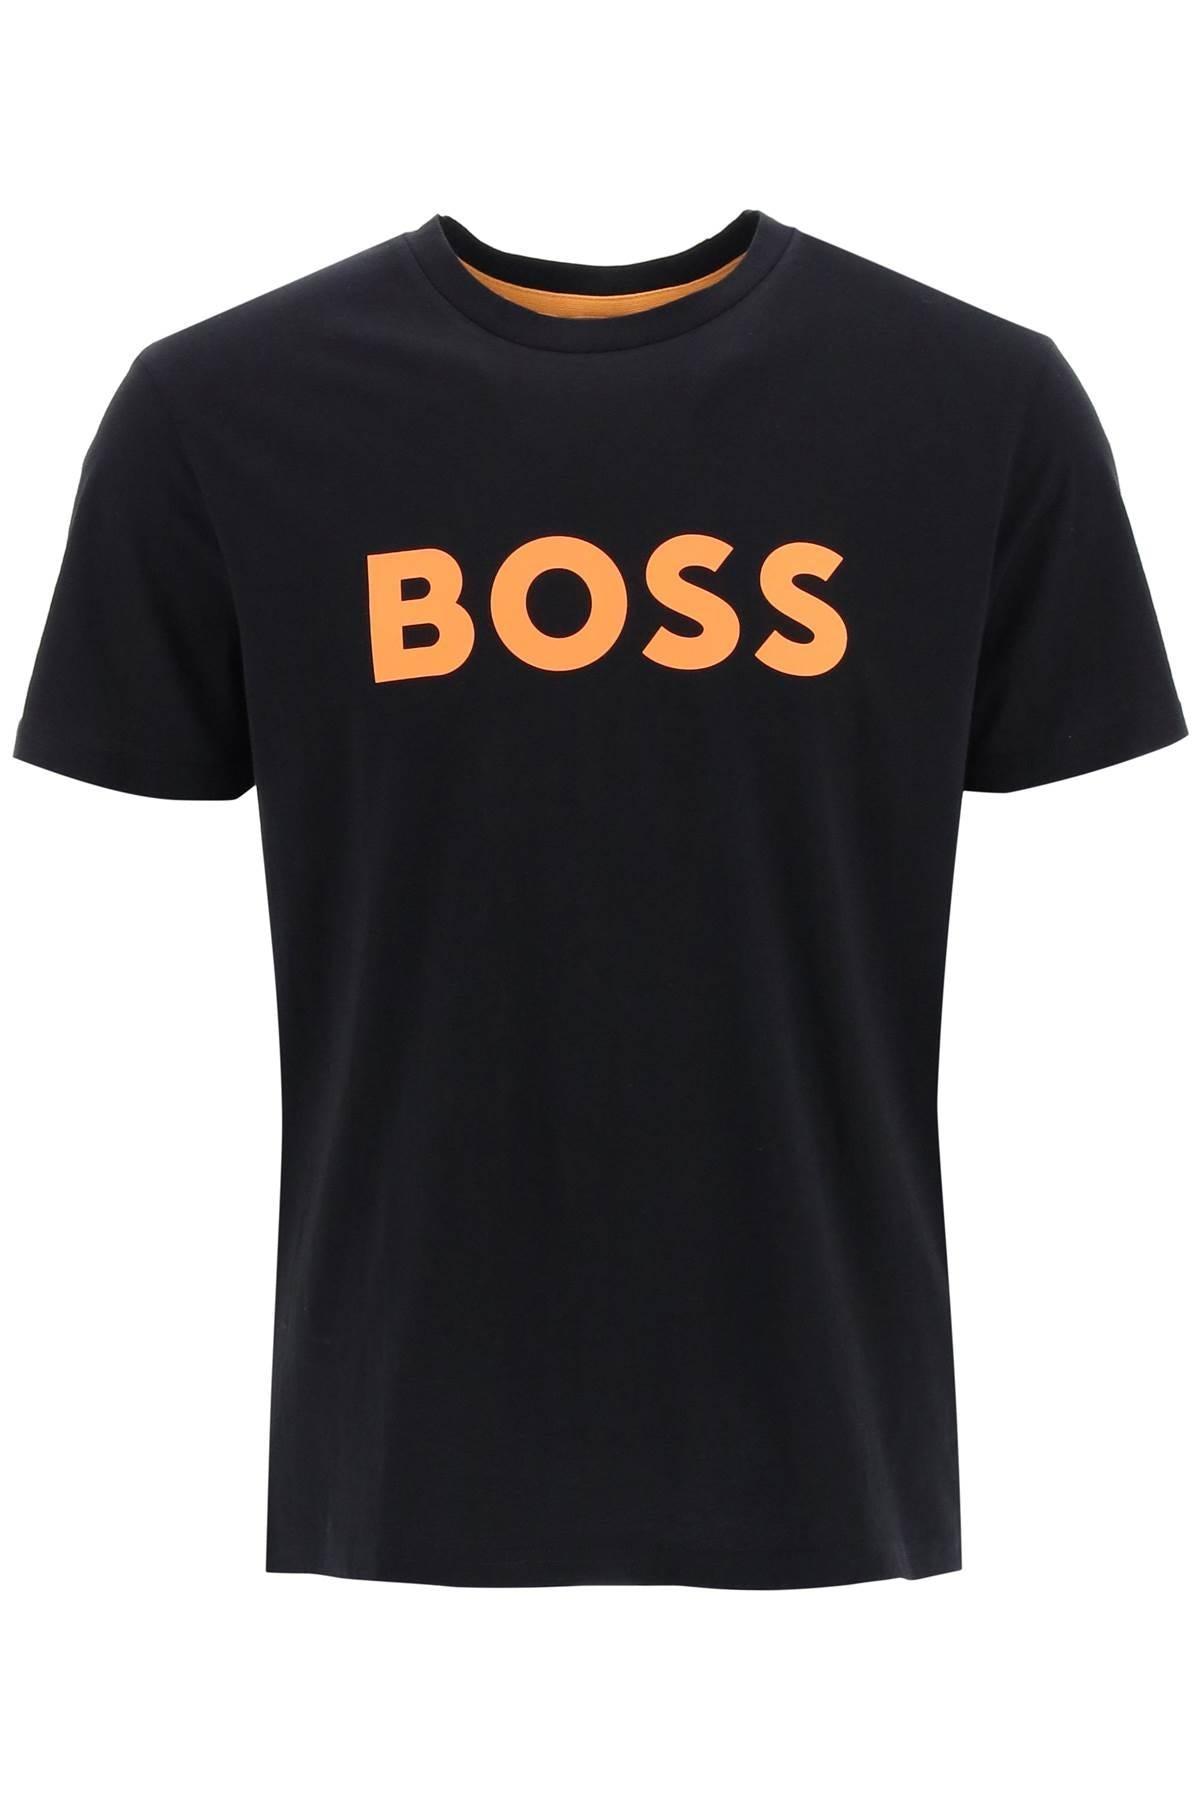 BOSS by HUGO BOSS Logo Print T Shirt in Black for Men | Lyst